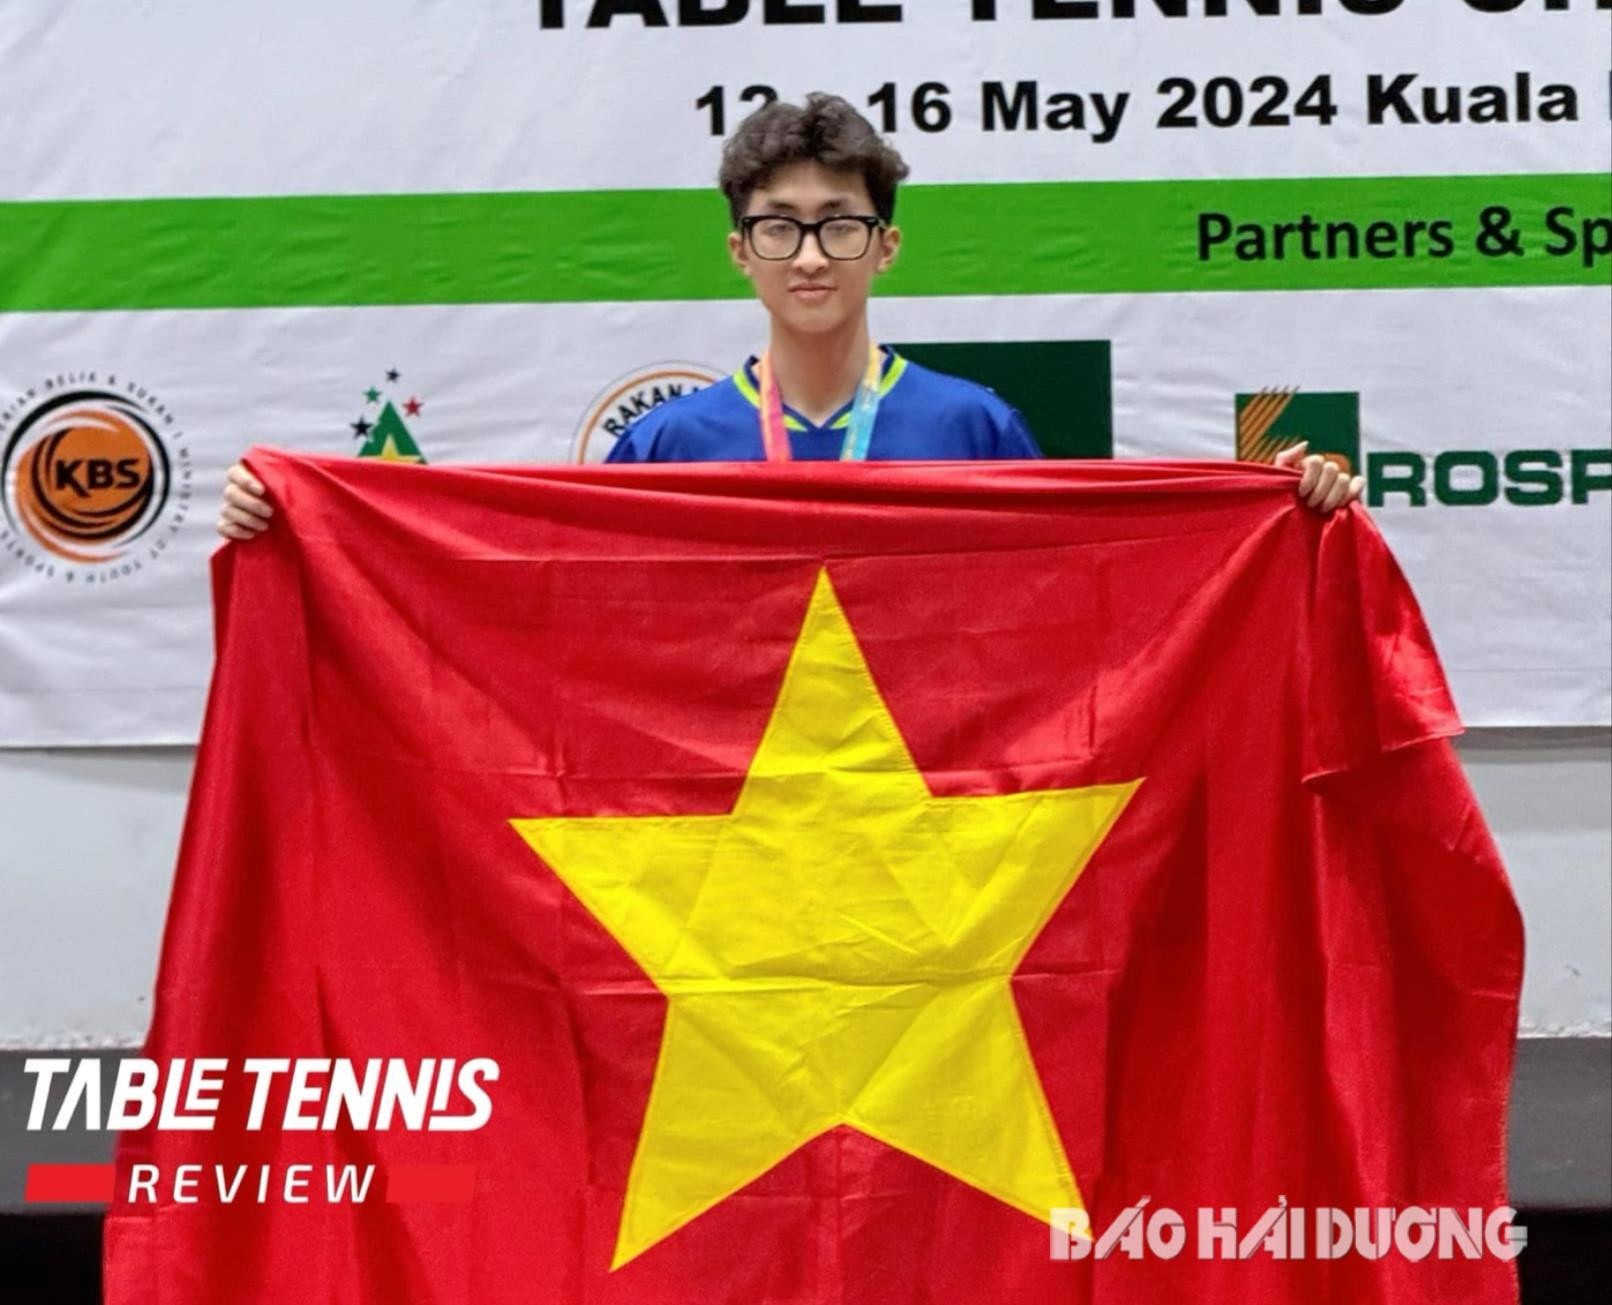 Nguyễn Duy Phong của Hải Dương giành huy chương vàng đơn nam cho bóng bàn Việt Nam tại Giải vô địch bóng bàn trẻ Đông Nam Á. Ảnh: TABLE TENNIS